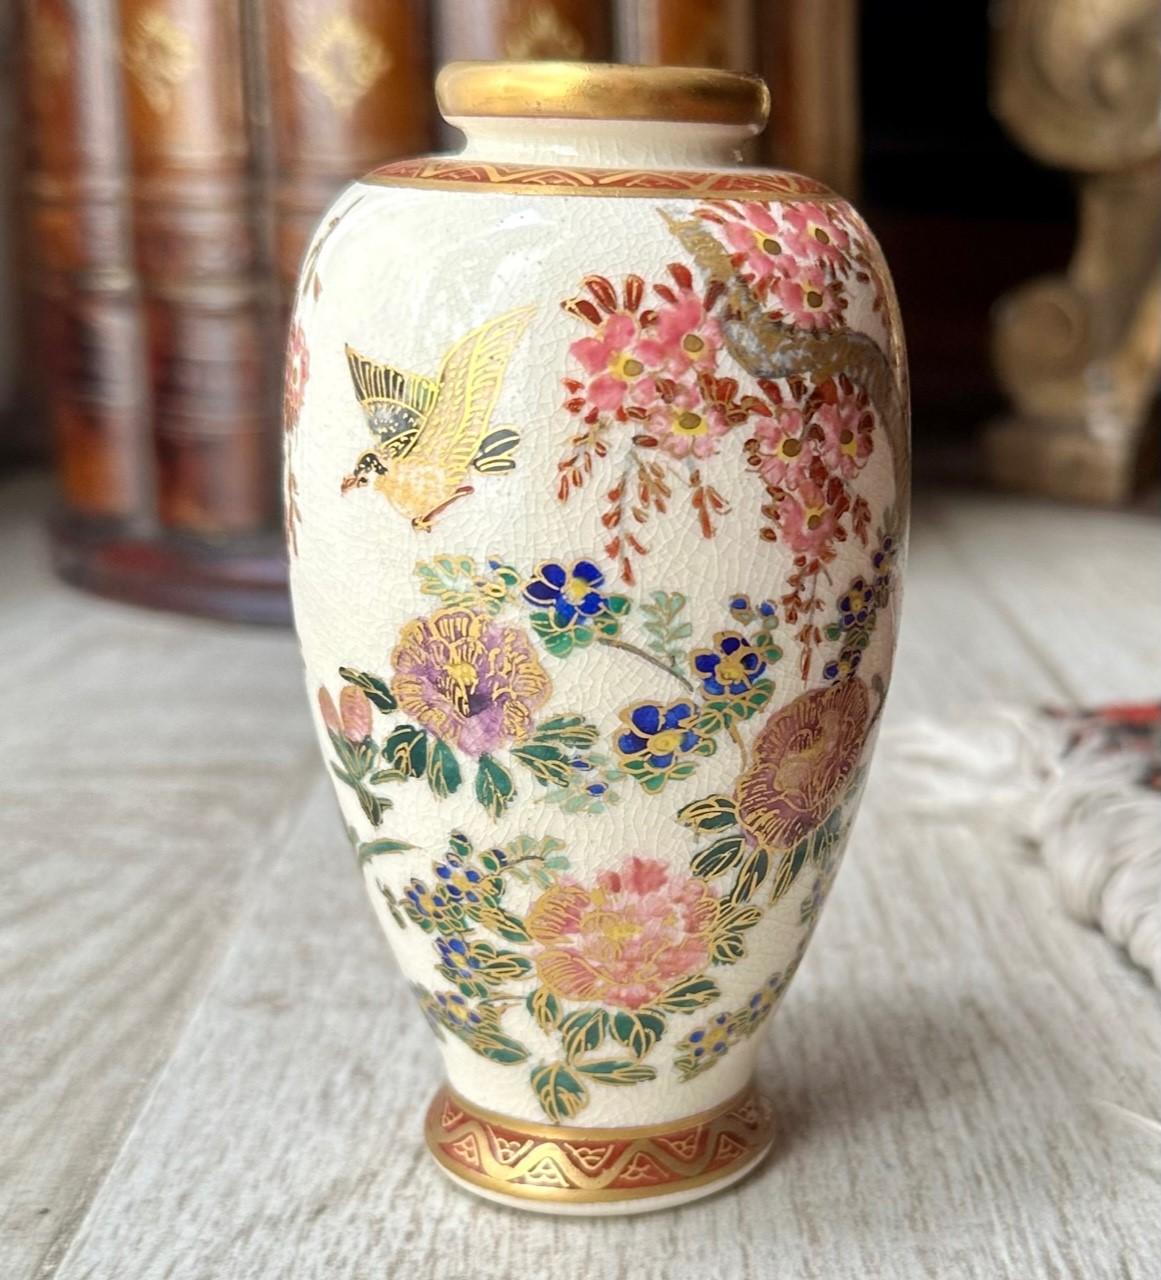 Kleine Satsuma-Baluster-Vase aus der Meiji-Periode.

Diese japanische Satsuma-Vase aus der späten Meiji-Periode ist handbemalt und vergoldet und zeigt eine japanische Landschaft in exquisiten Details. Die Szene in der Nature ist üppig mit hängenden